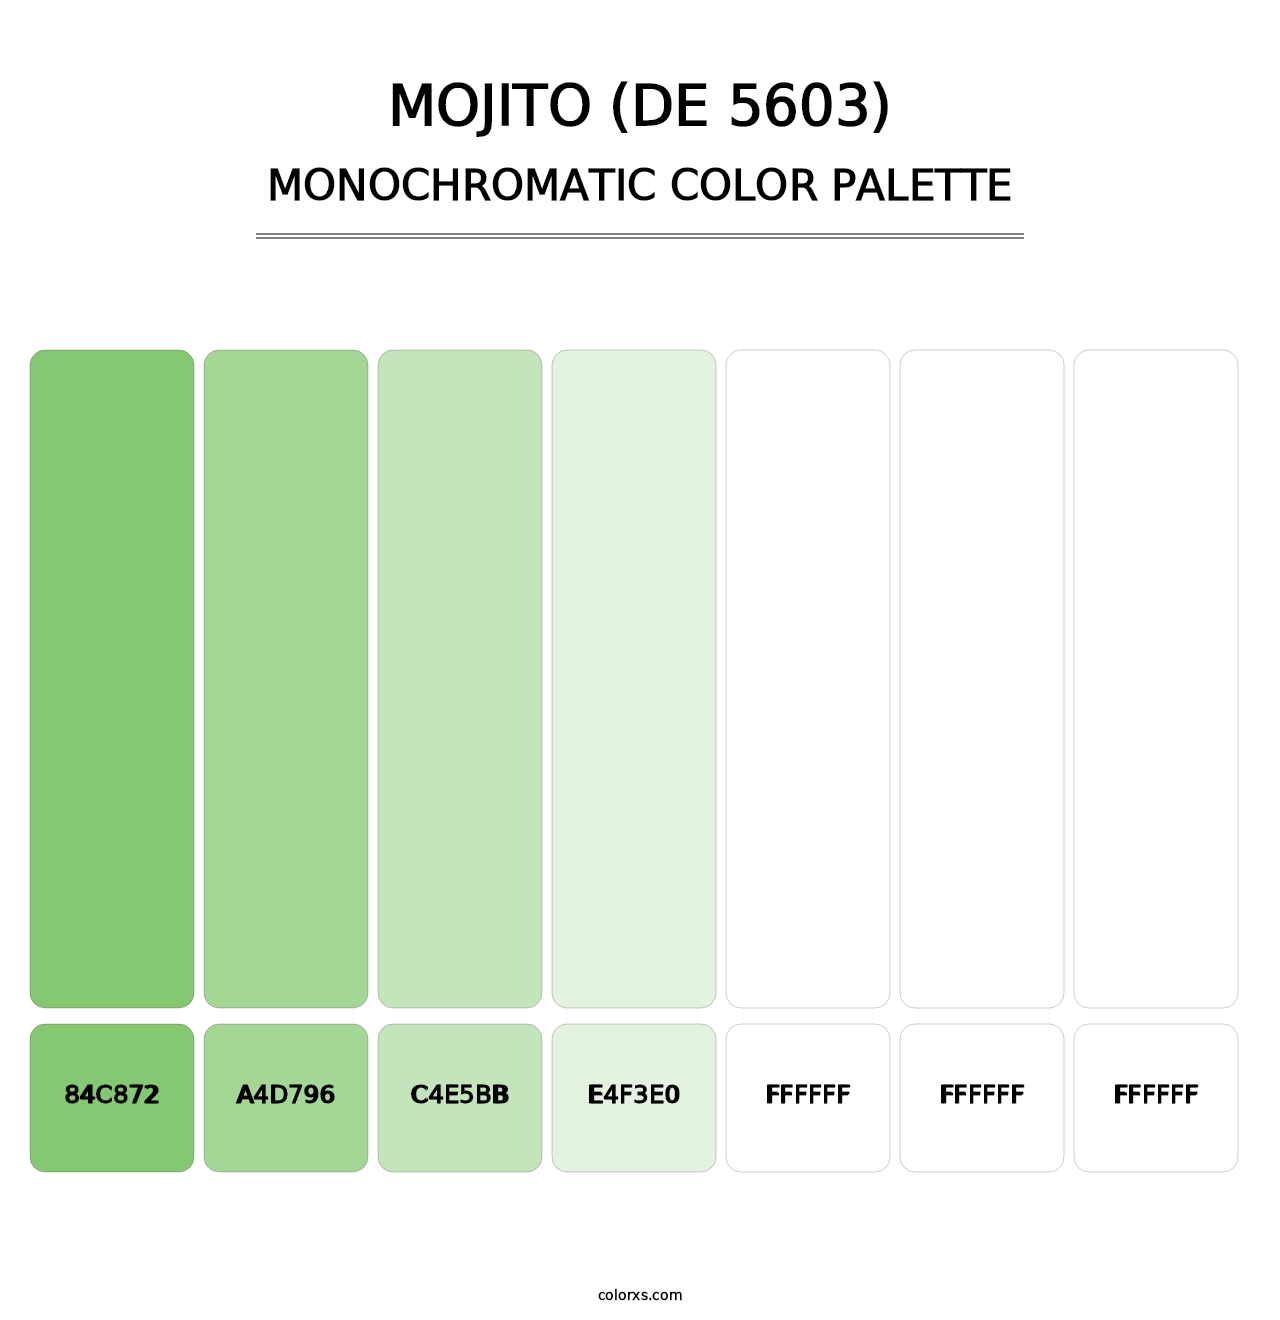 Mojito (DE 5603) - Monochromatic Color Palette